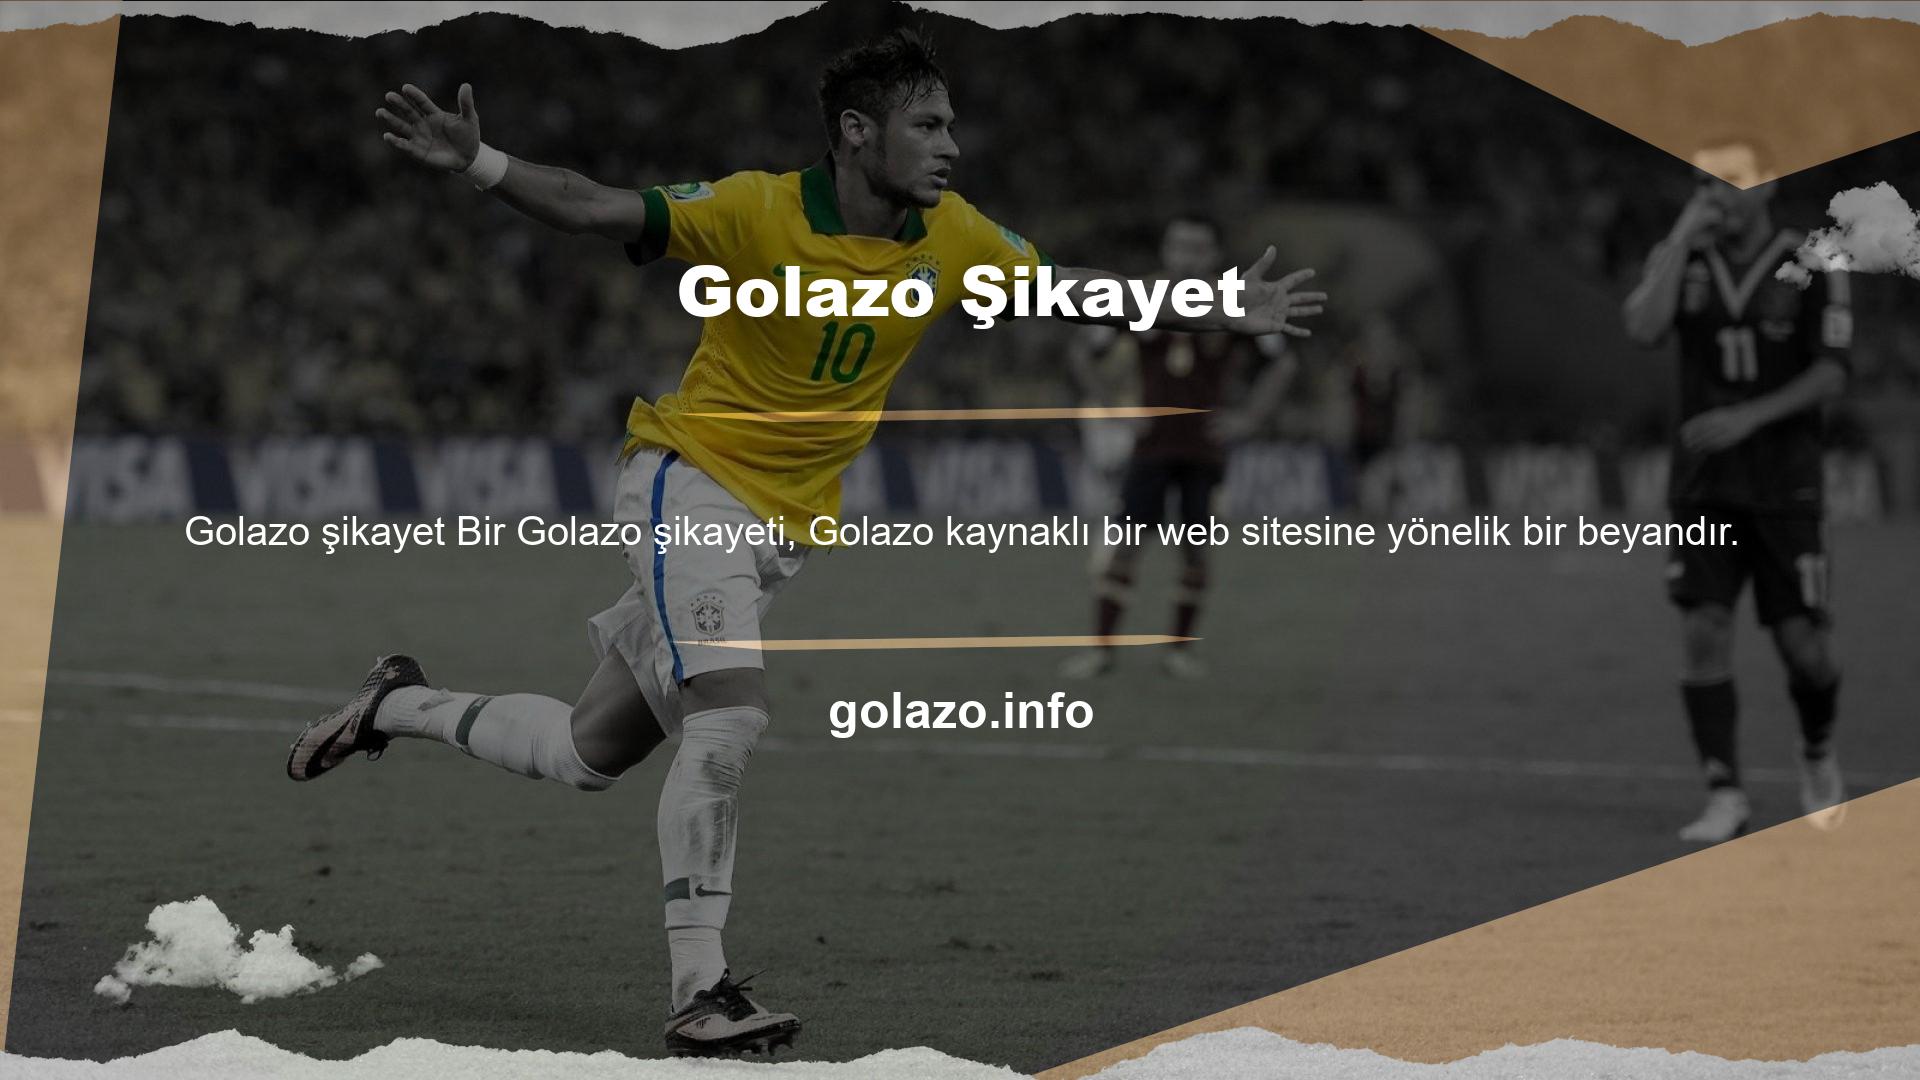 Türkiye pazarında ayrıca Golazo dayalı bahis hizmetleri sunan web siteleri de bulunmaktadır